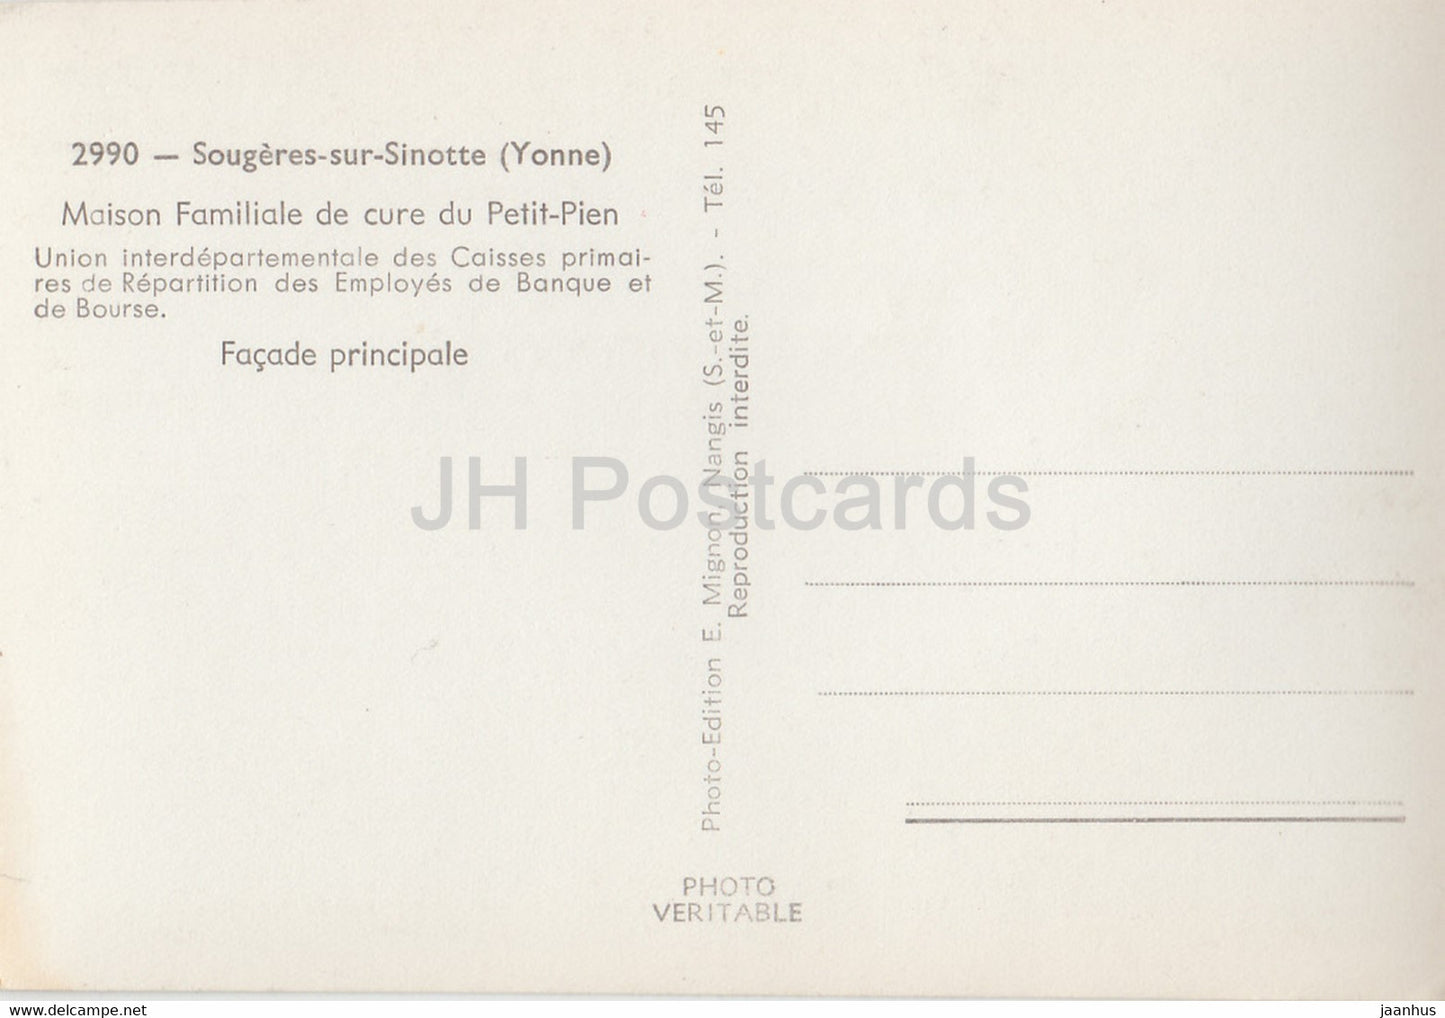 Sougeres sur Sinotte - Maison Familiale de cure du Petit Pien - old postcard - France - unused